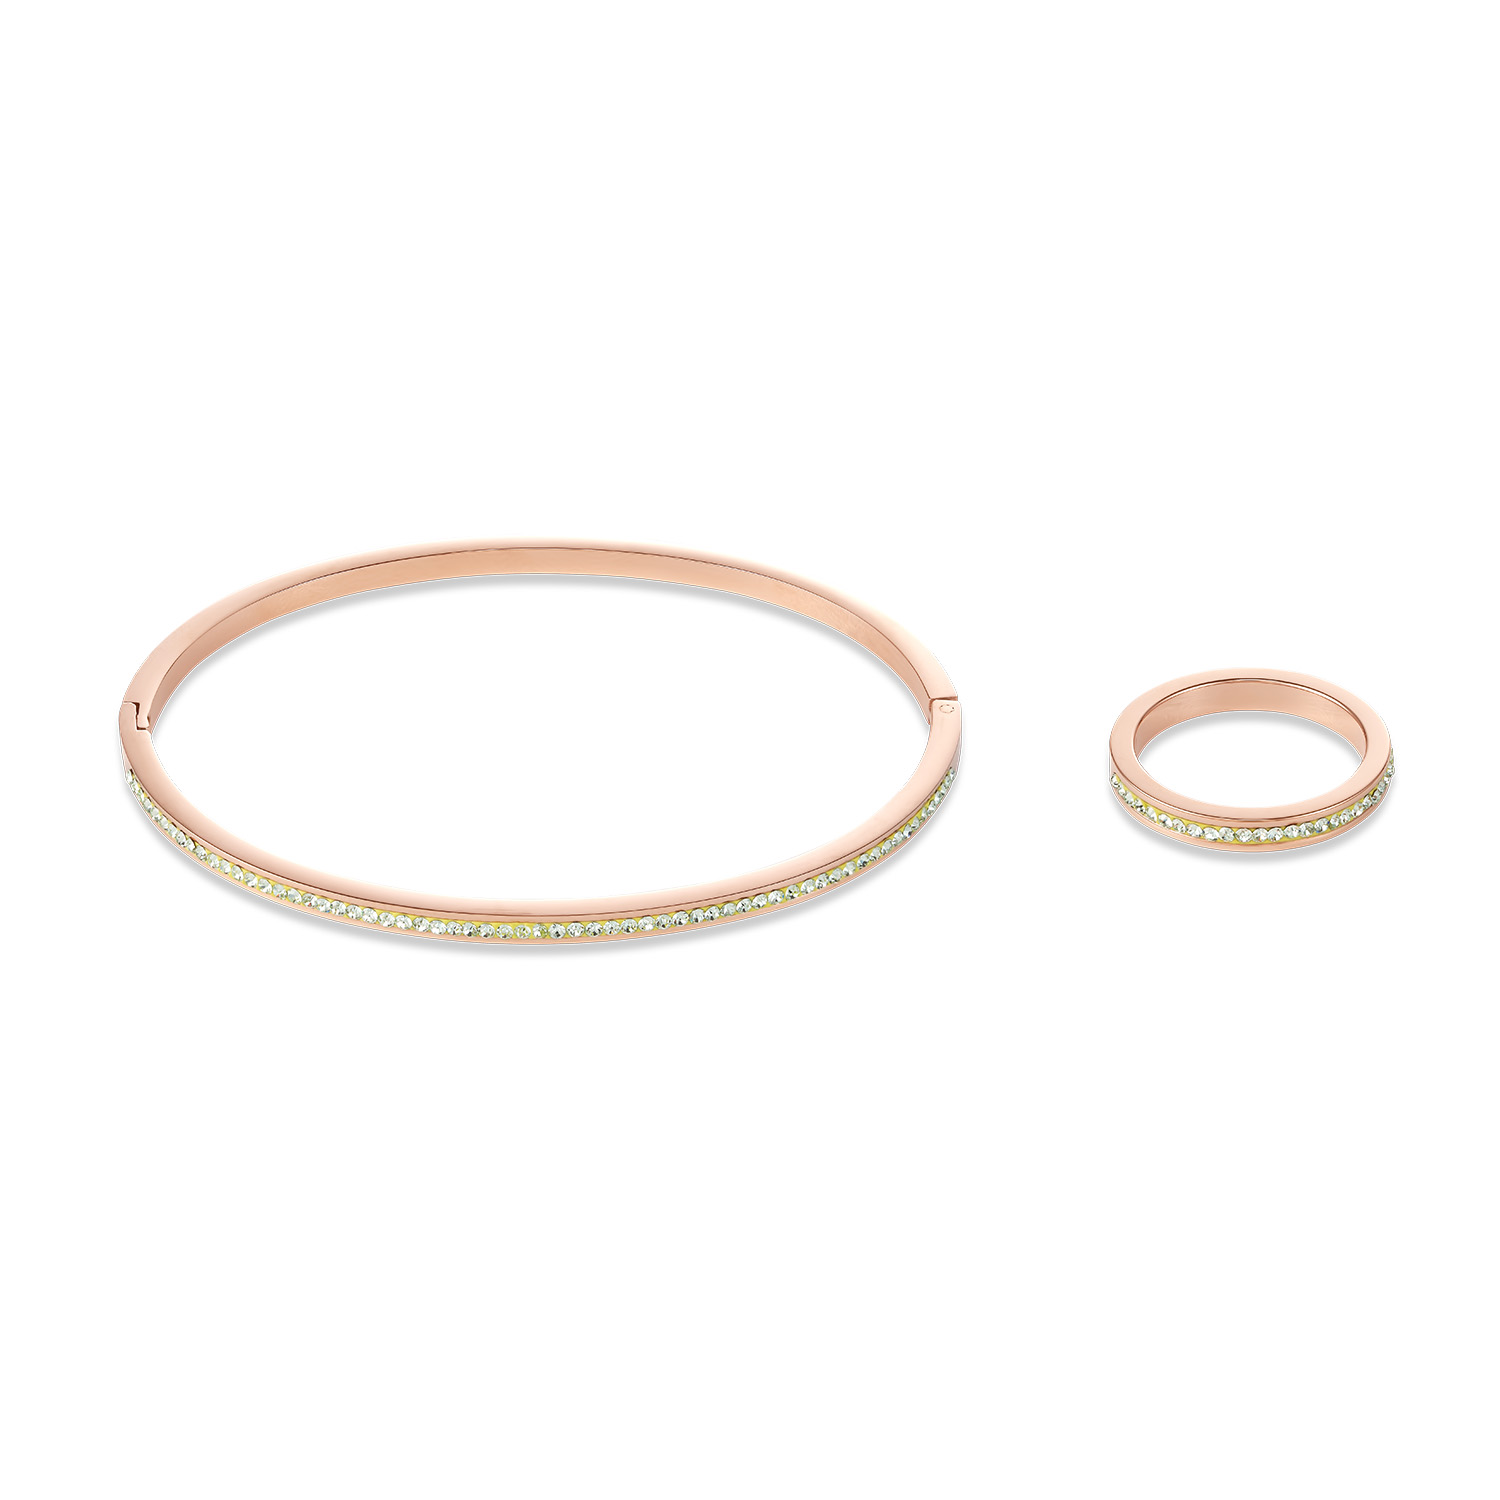 Wholesale Custom OEM/ODM Jewelry made zirconia bracelet 925 silver fine jewelry OEM supplier